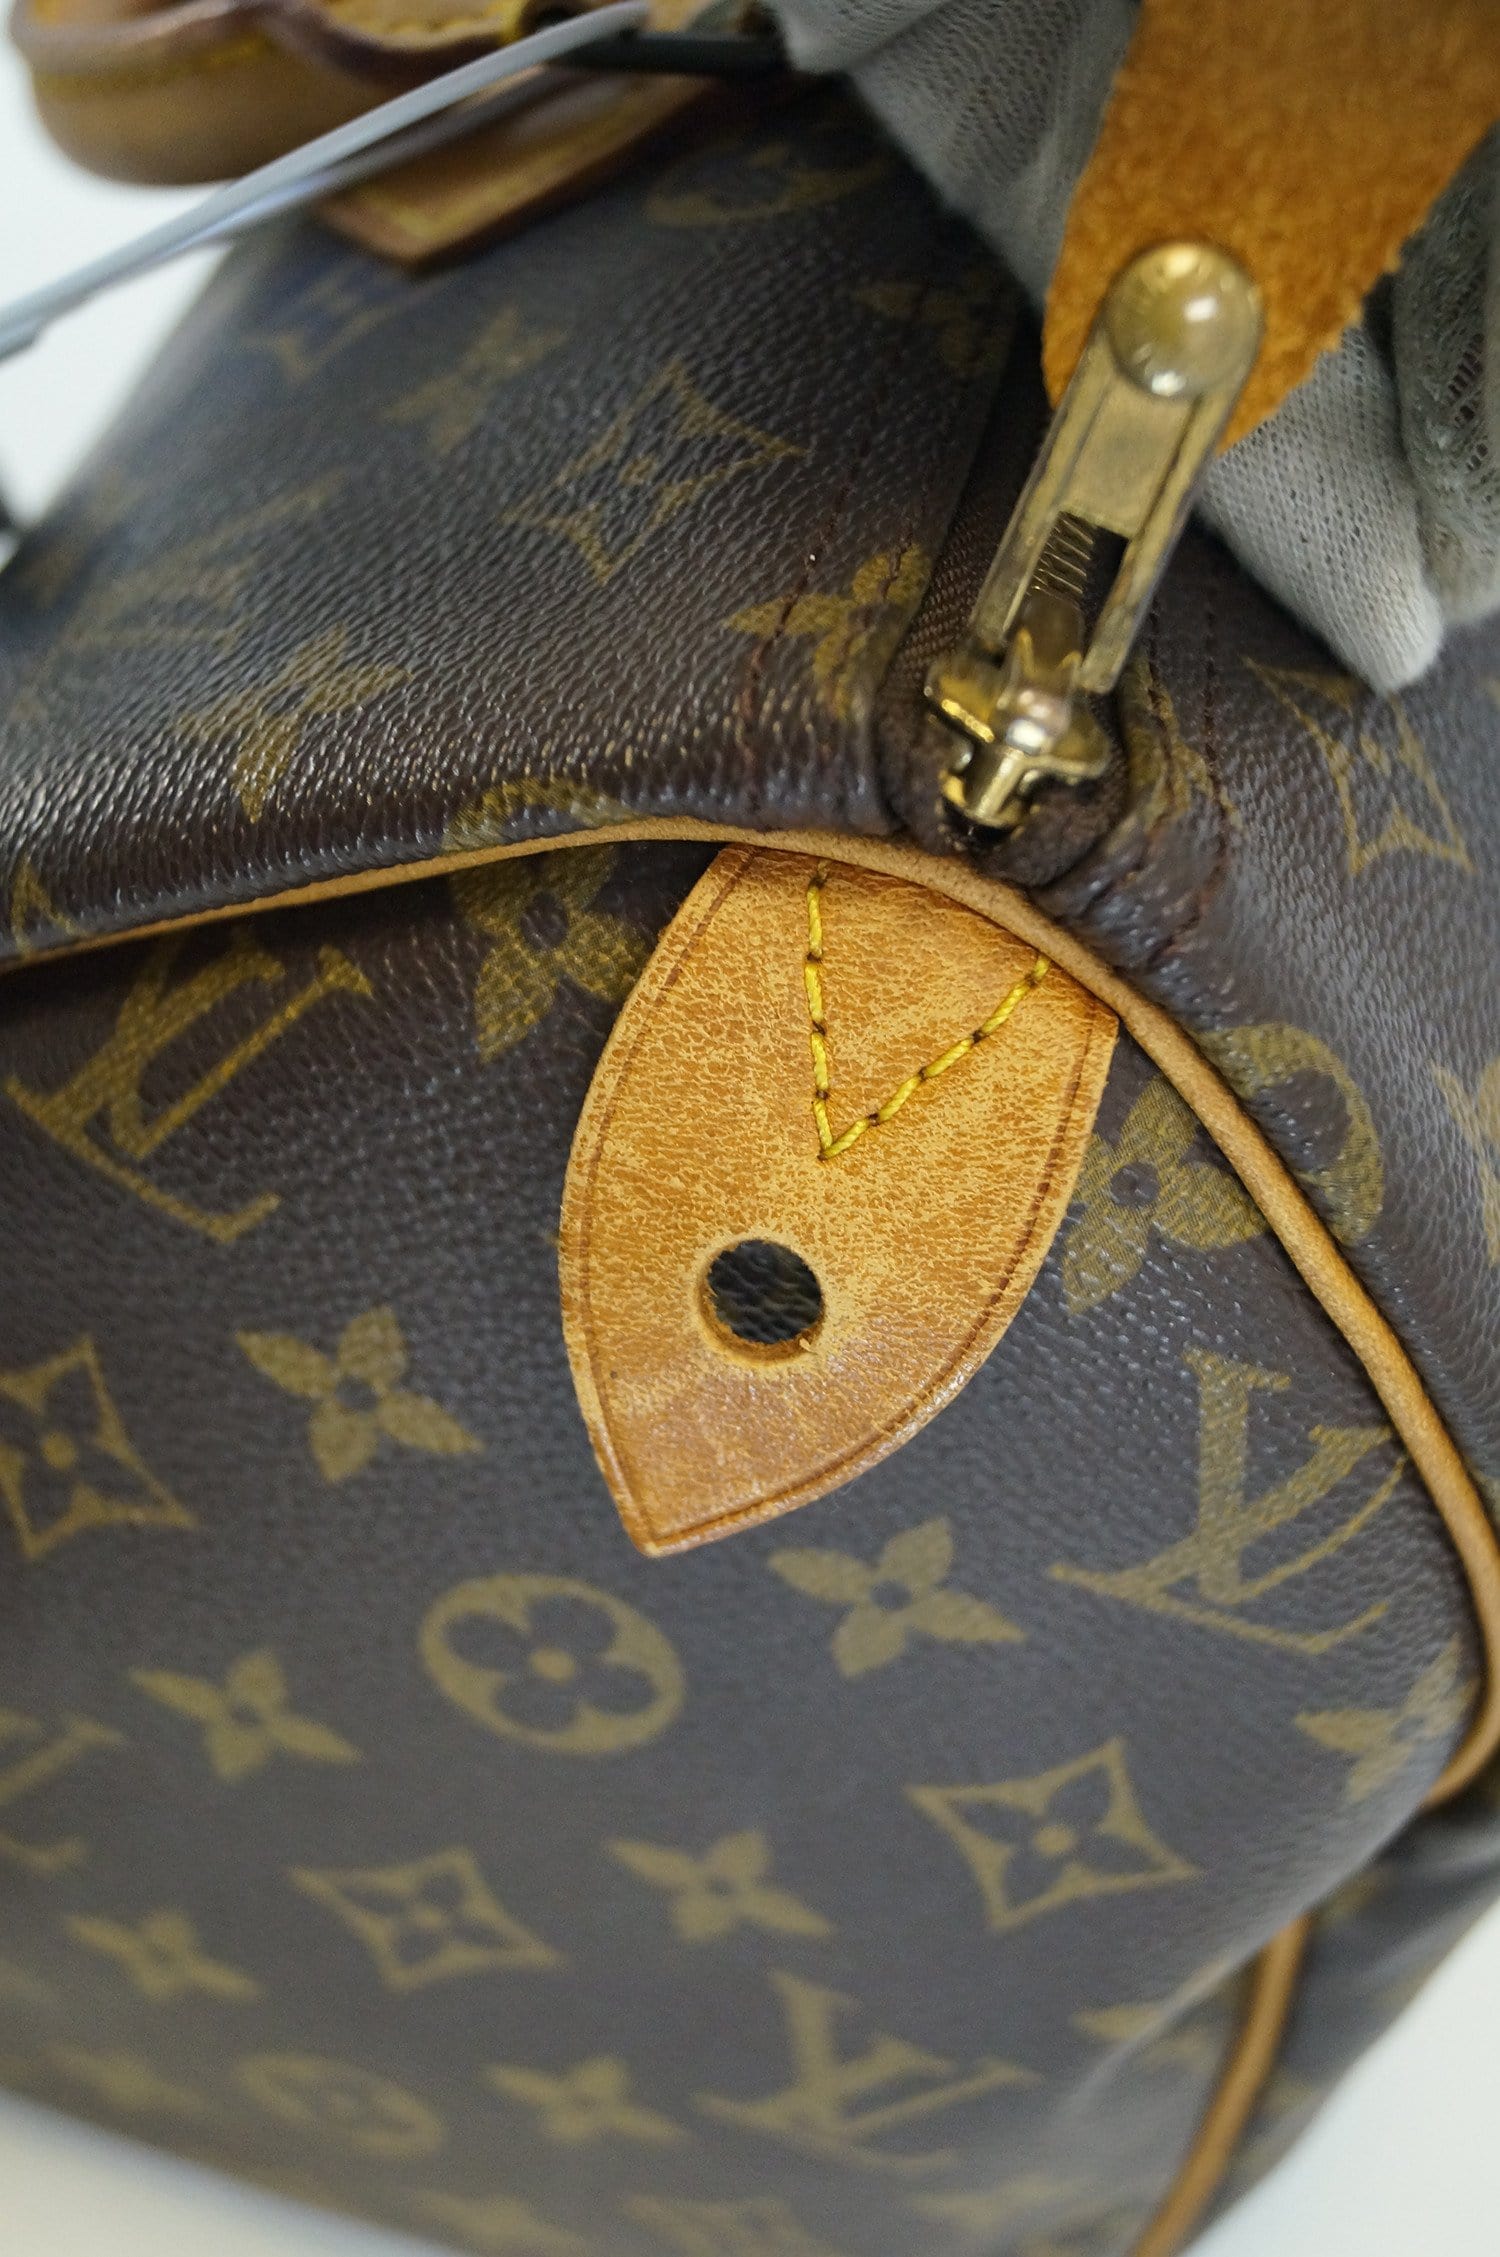 Louis Vuitton Speedy 30 - ShopStyle Shoulder Bags